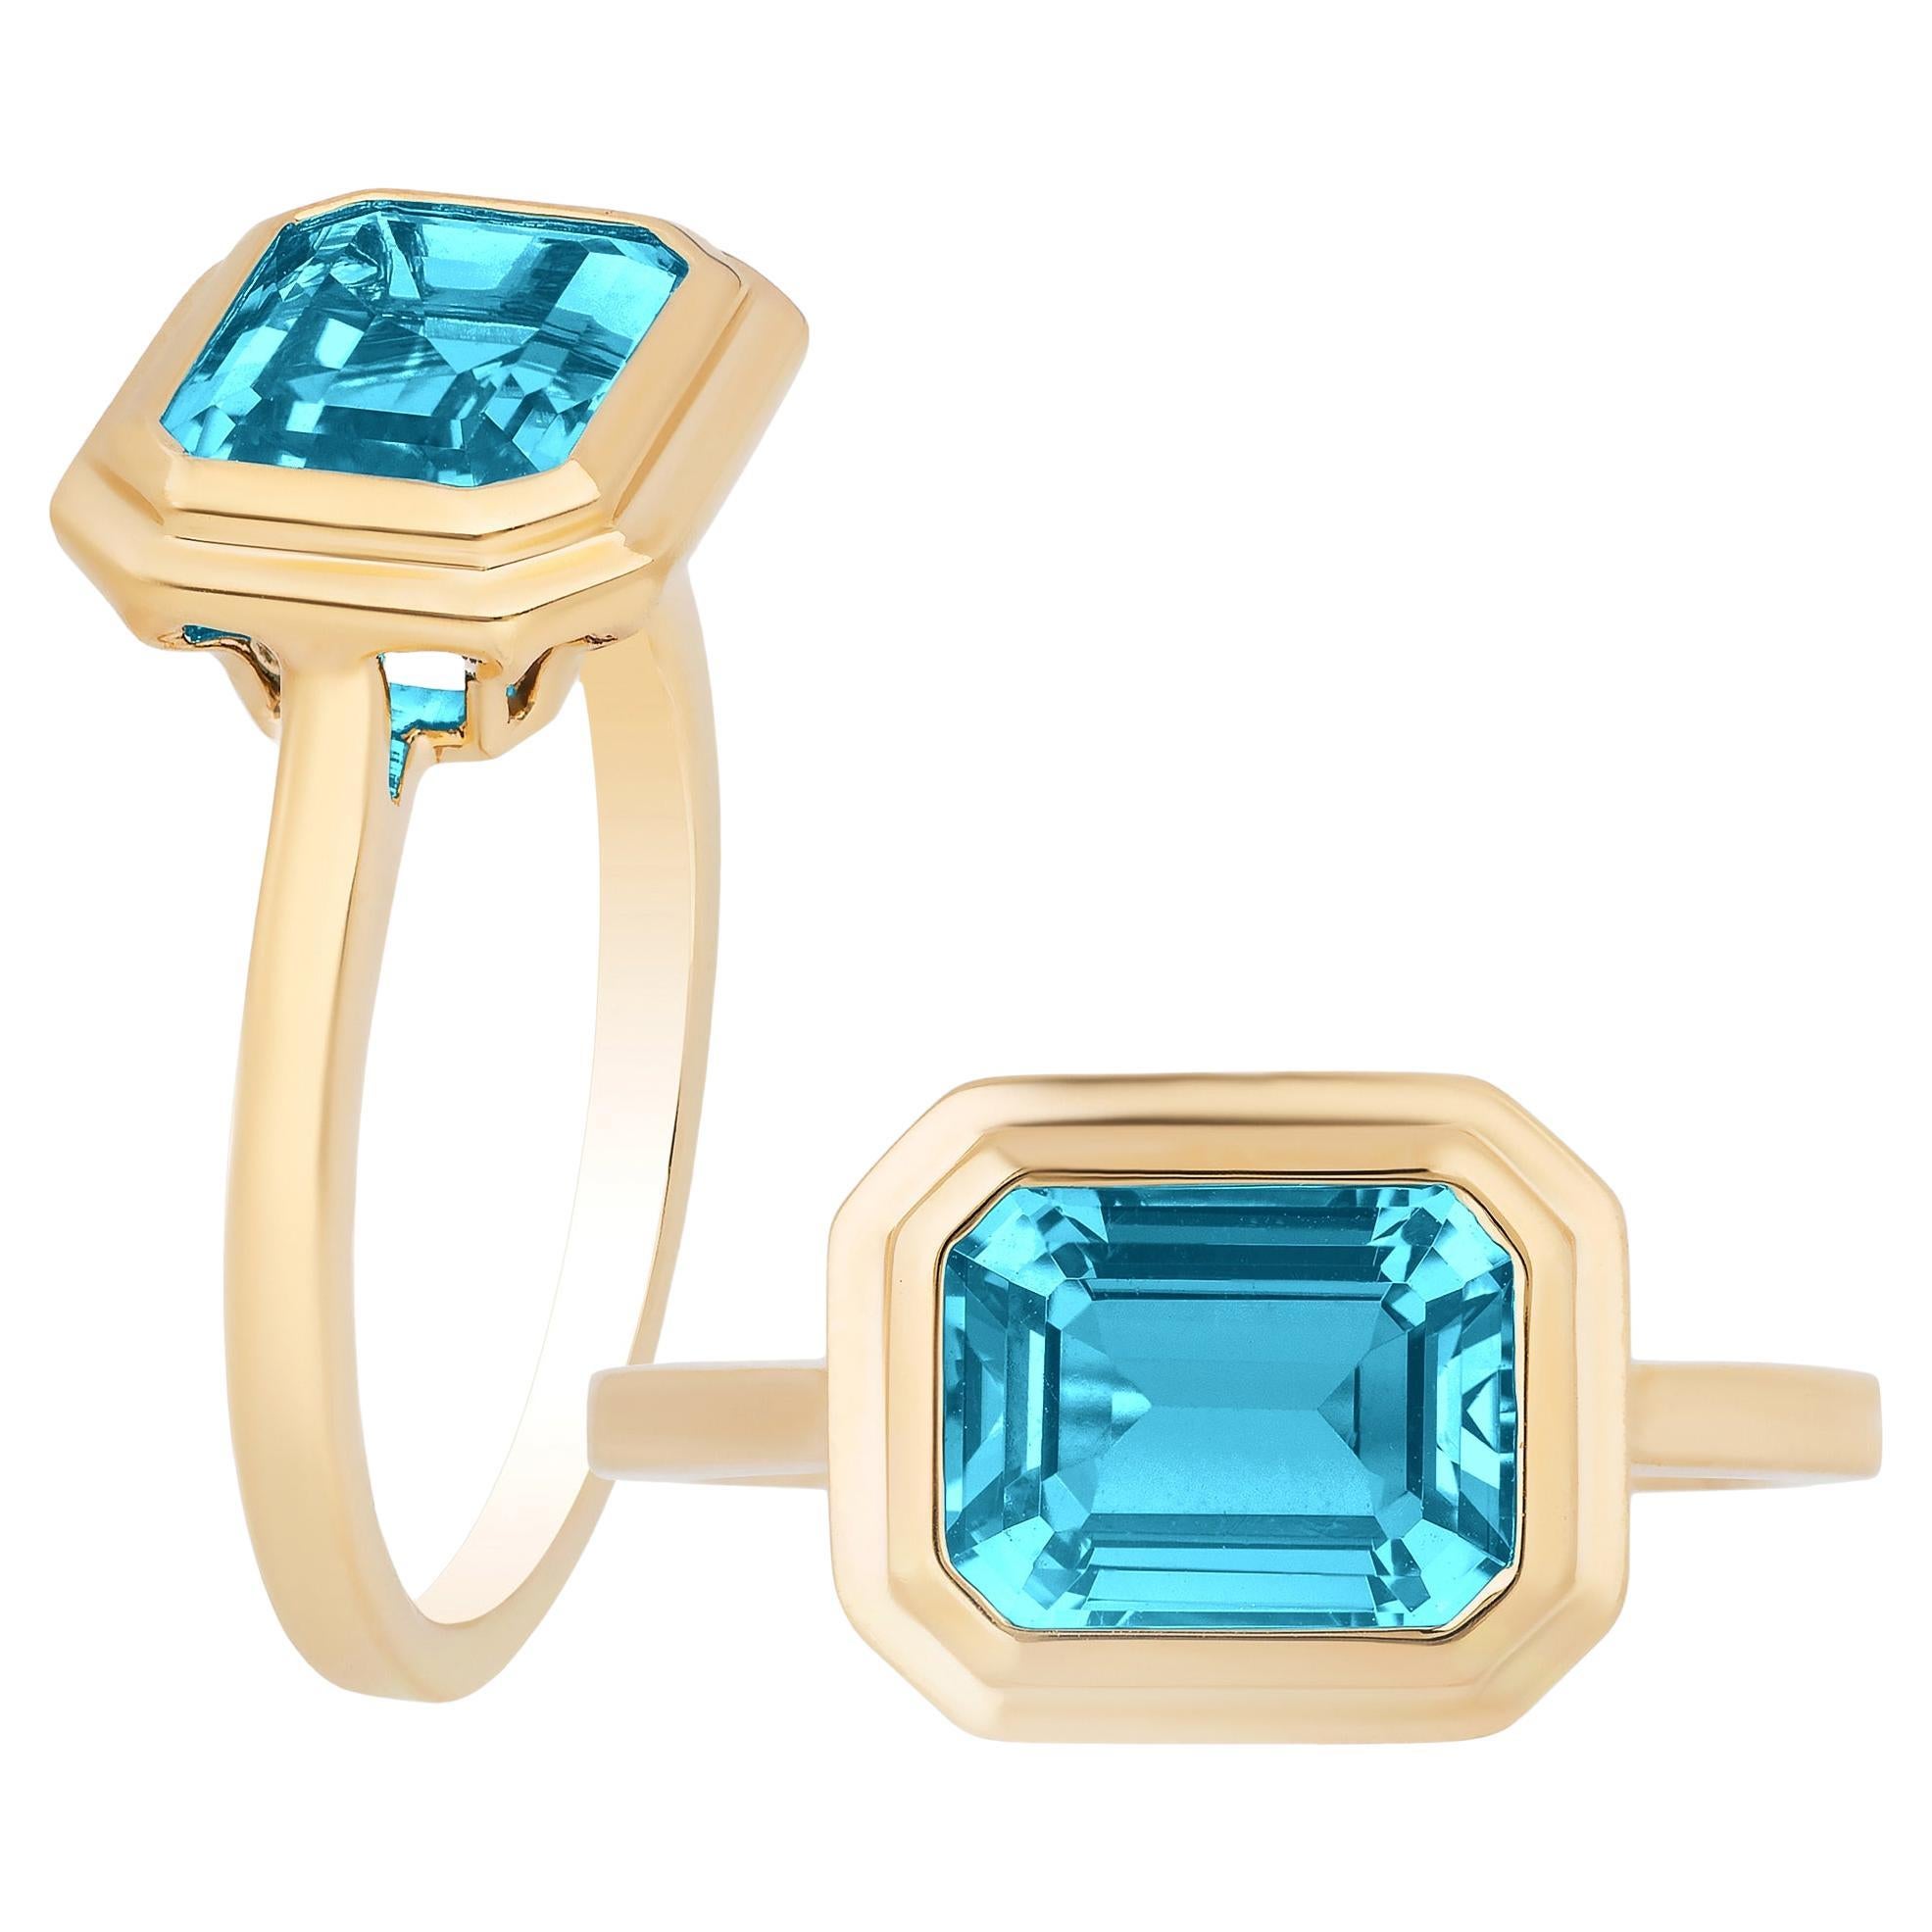 Goshwara Blue Topaz Emerald Cut Bezel Set Ring For Sale